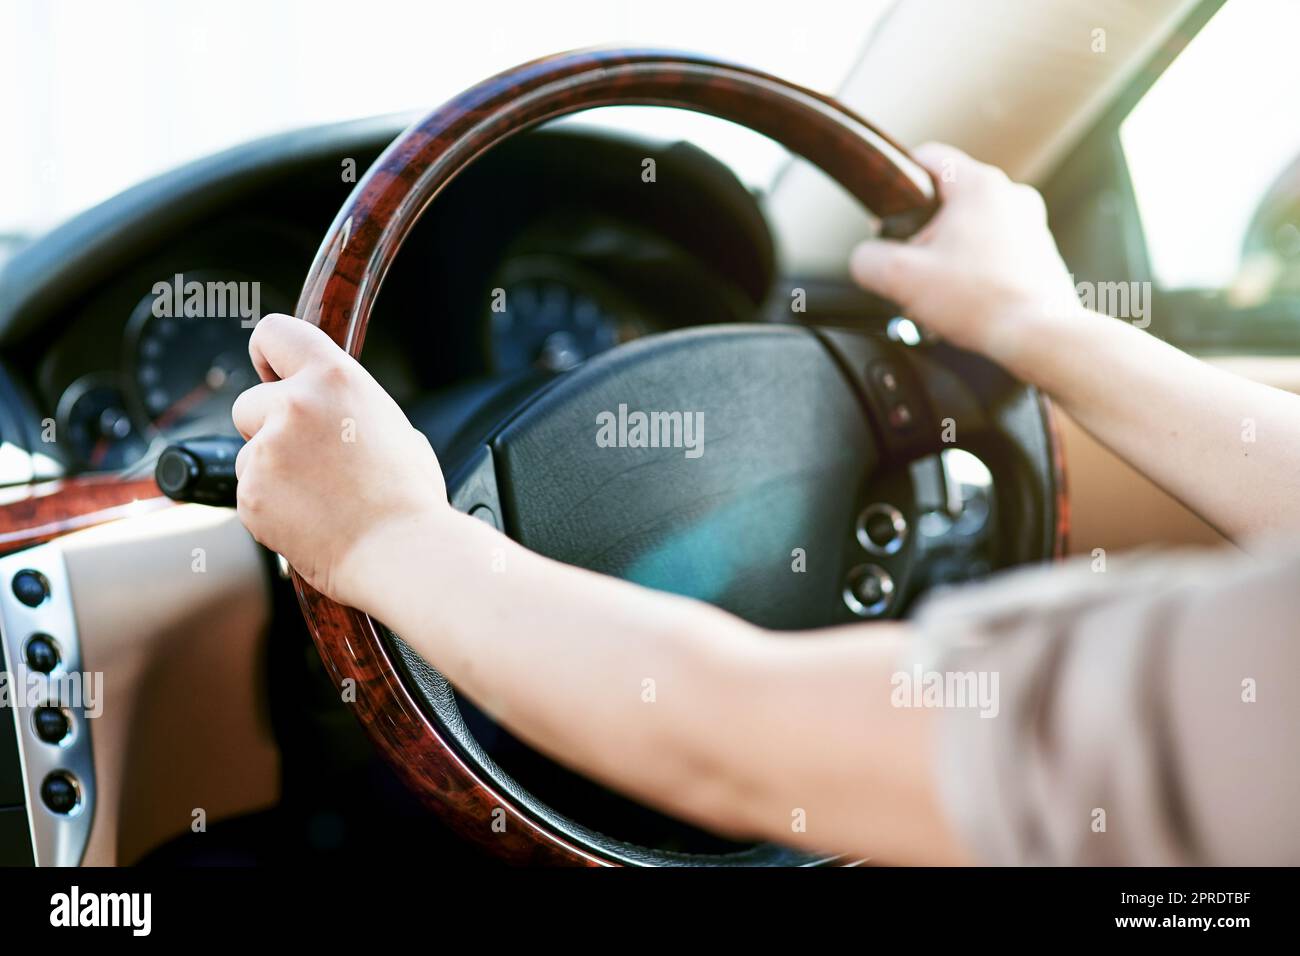 Hände eines Fahrers auf dem Lenkrad eines Autos für Reisen, Autofahrten oder Roadtrips. Fahren Sie mit dem Taxi, Taxi oder mit dem Fahrdienst. Nahaufnahme eines Limousinen-Chauffeurs, der Sicherheit praktiziert Stockfoto